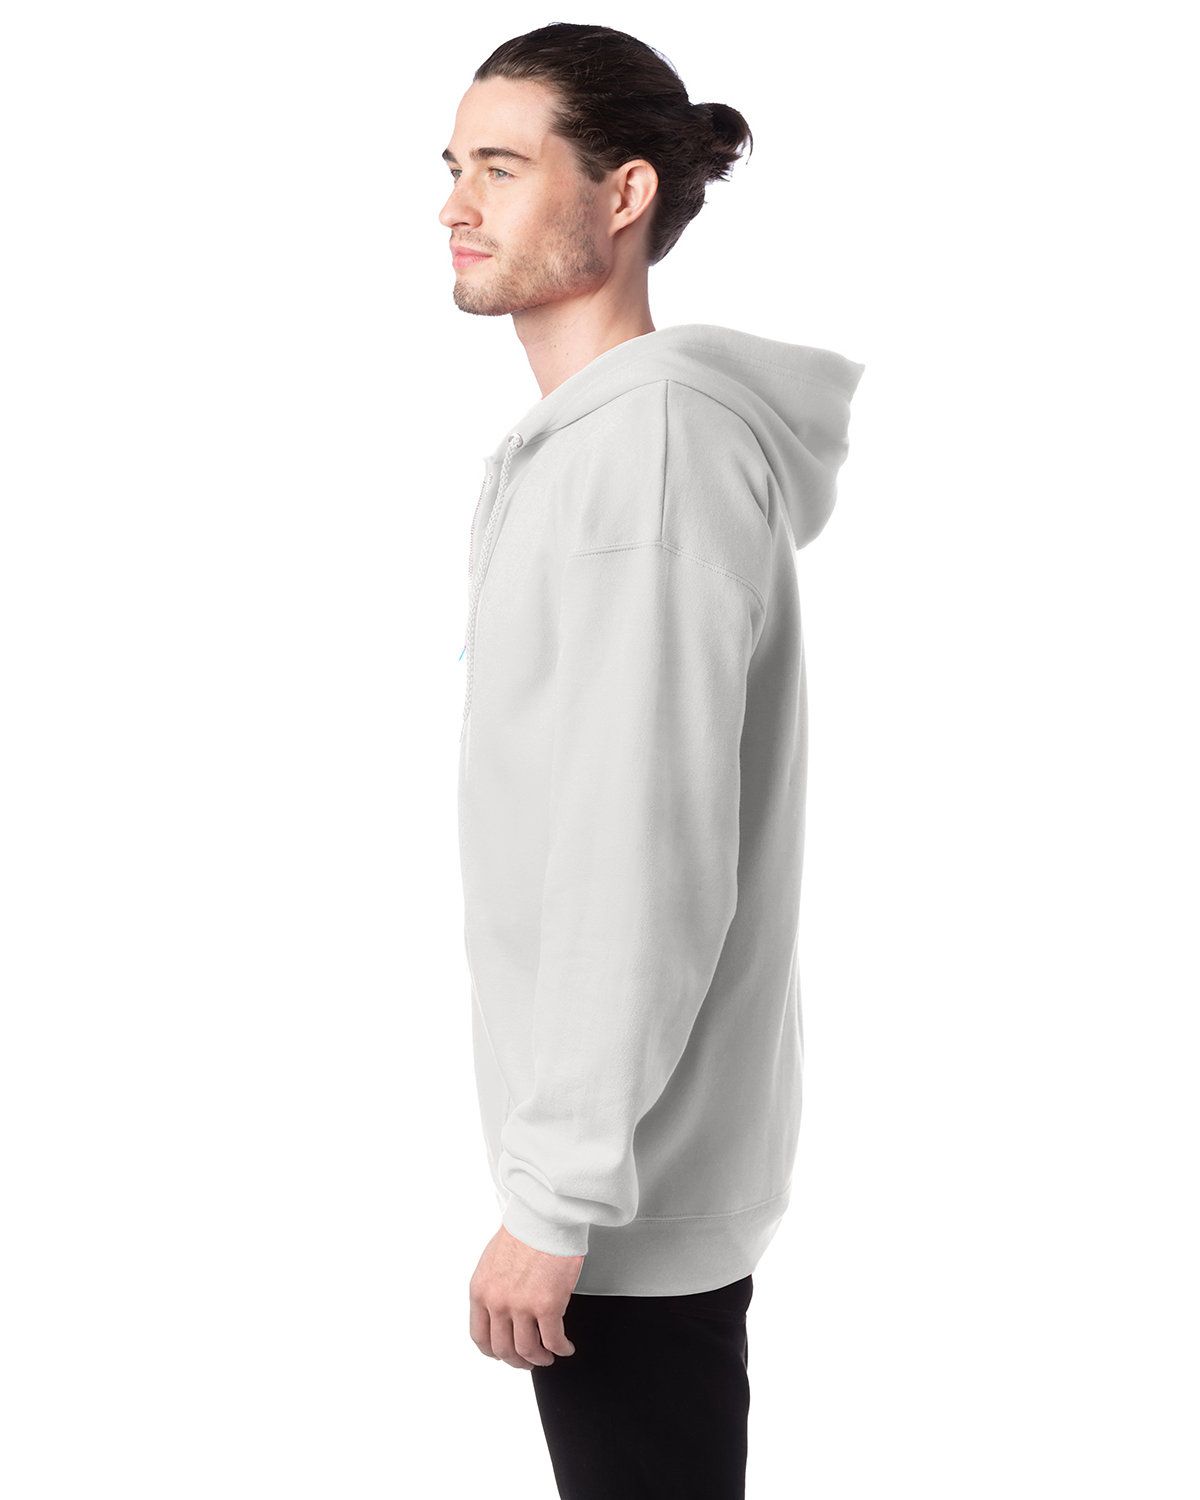 Hanes Men's Ecosmart Fleece Crewneck Sweatshirt - Navy Xl : Target